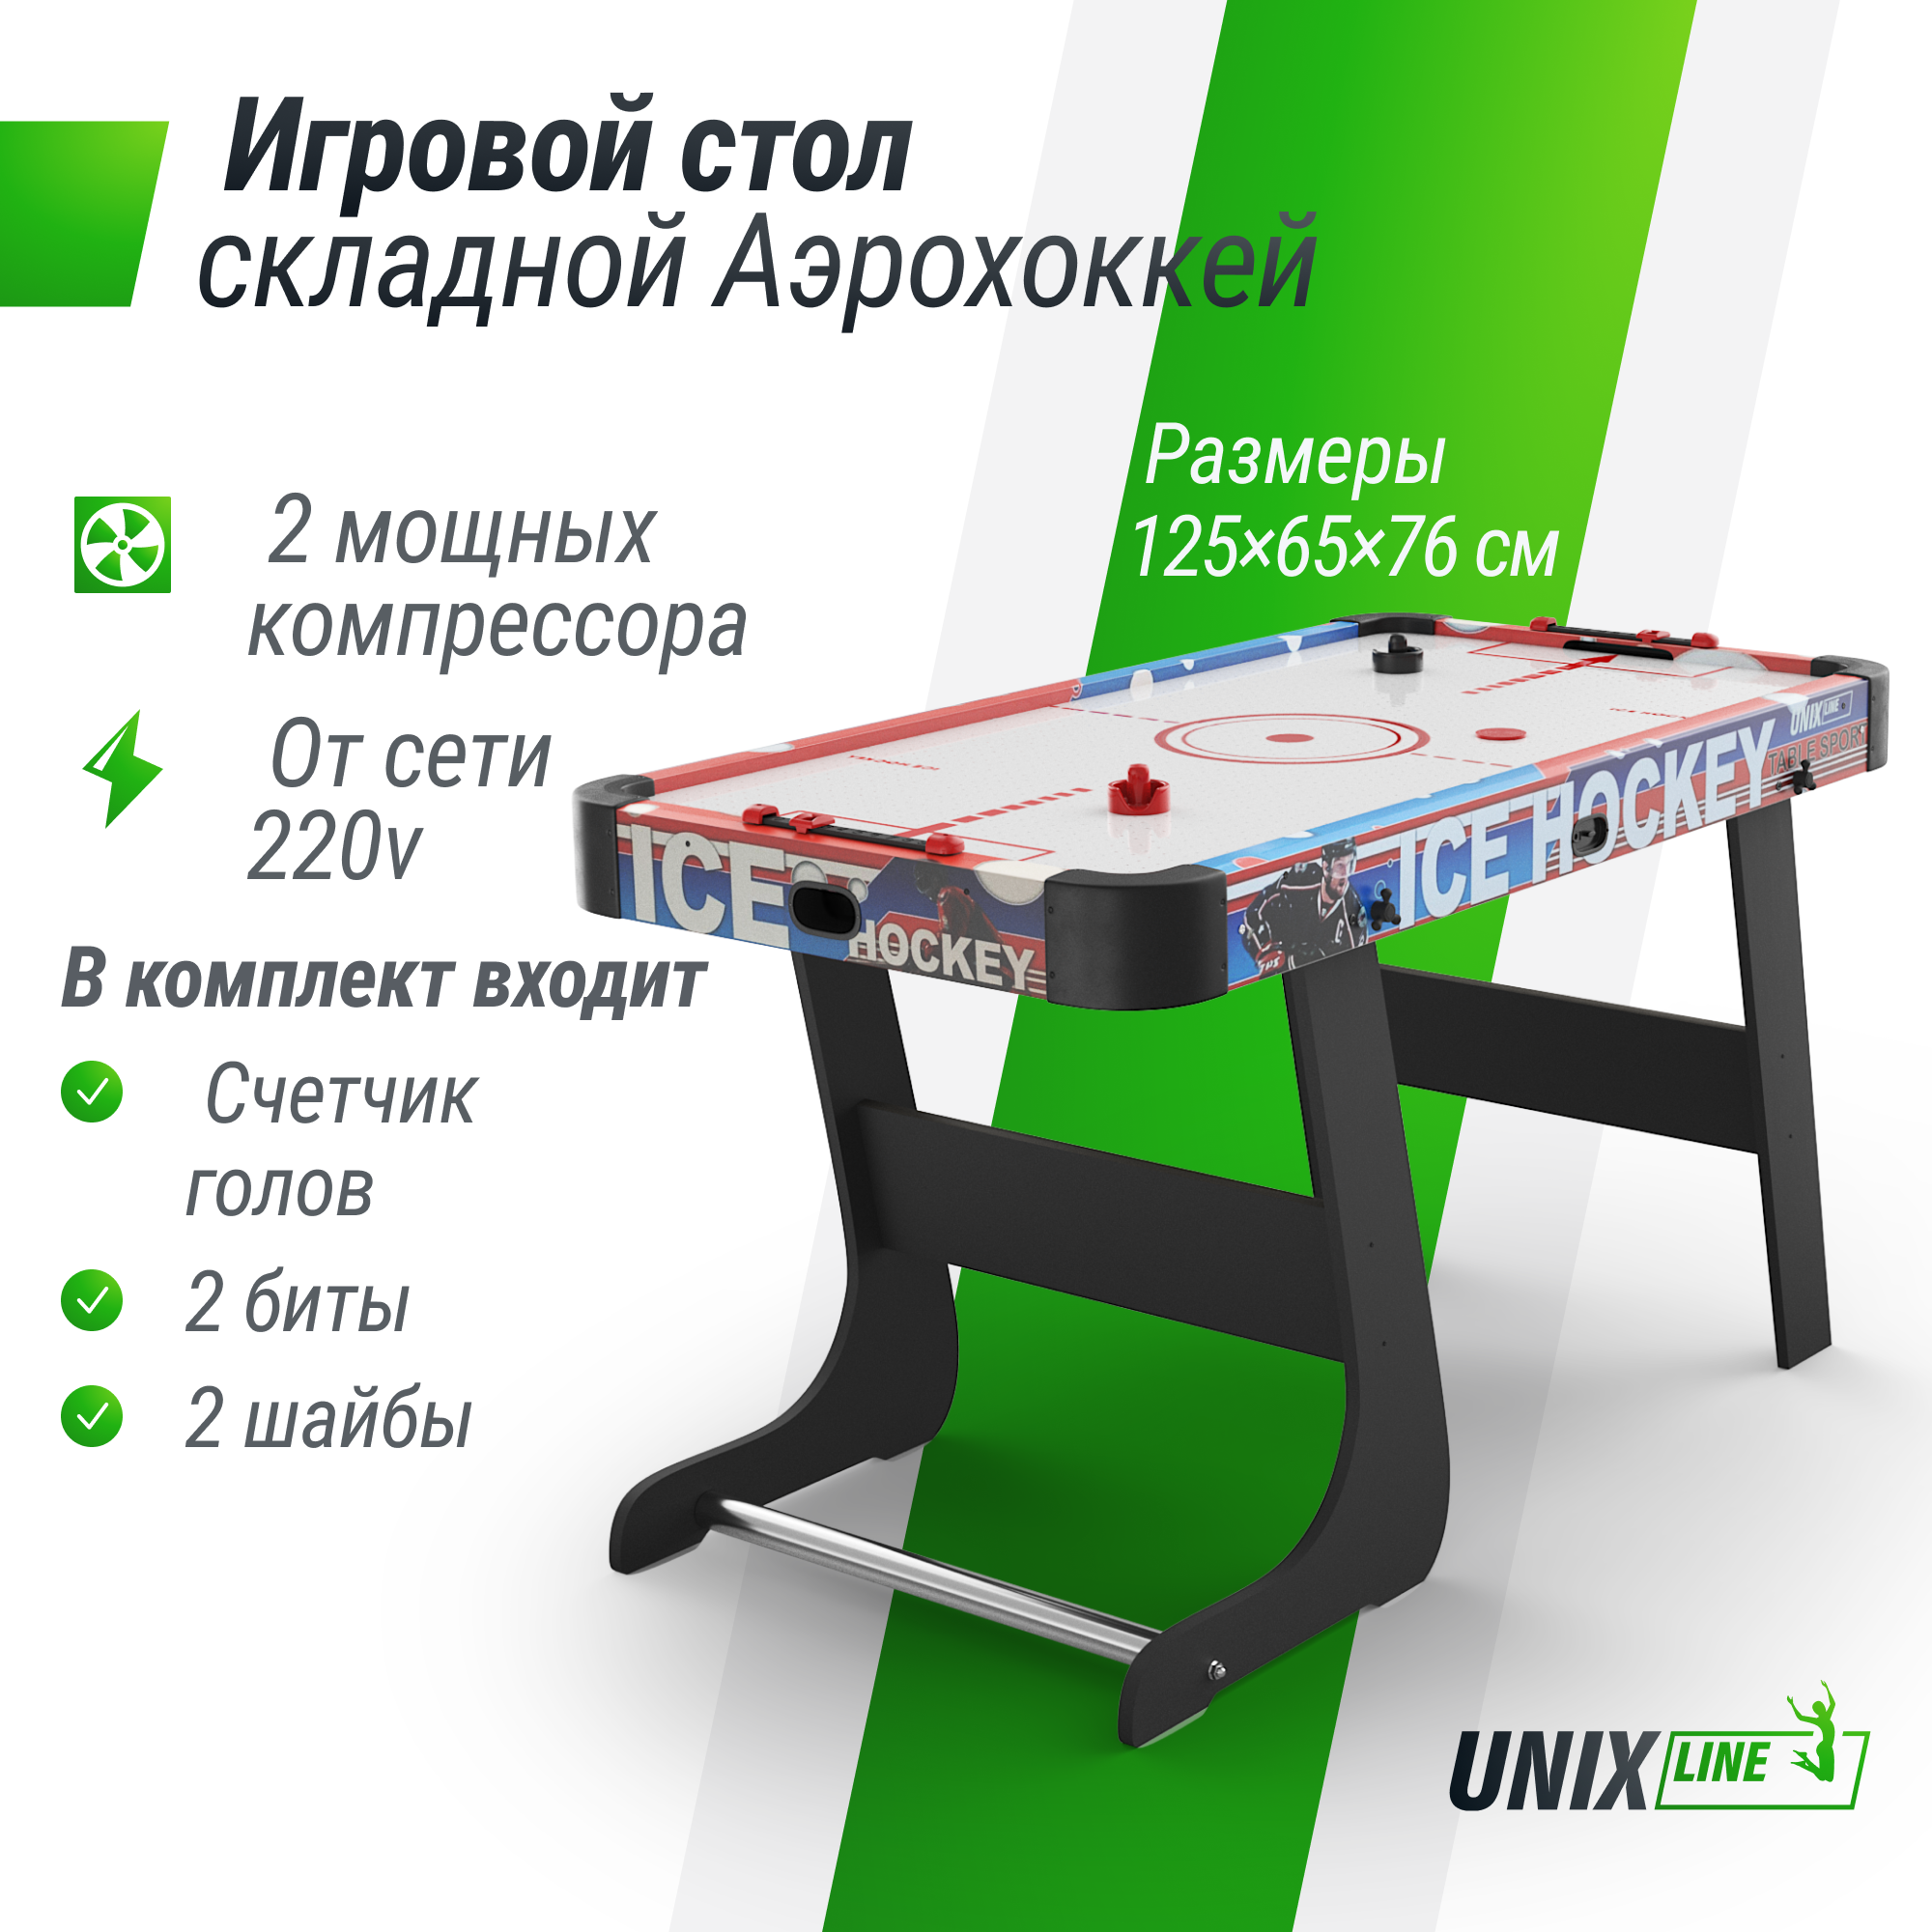 Игровой стол складной UNIX Line Аэрохоккей 125х65 cм, большой напольный, от сети 220 В теннисный стол start line olympic c сеткой